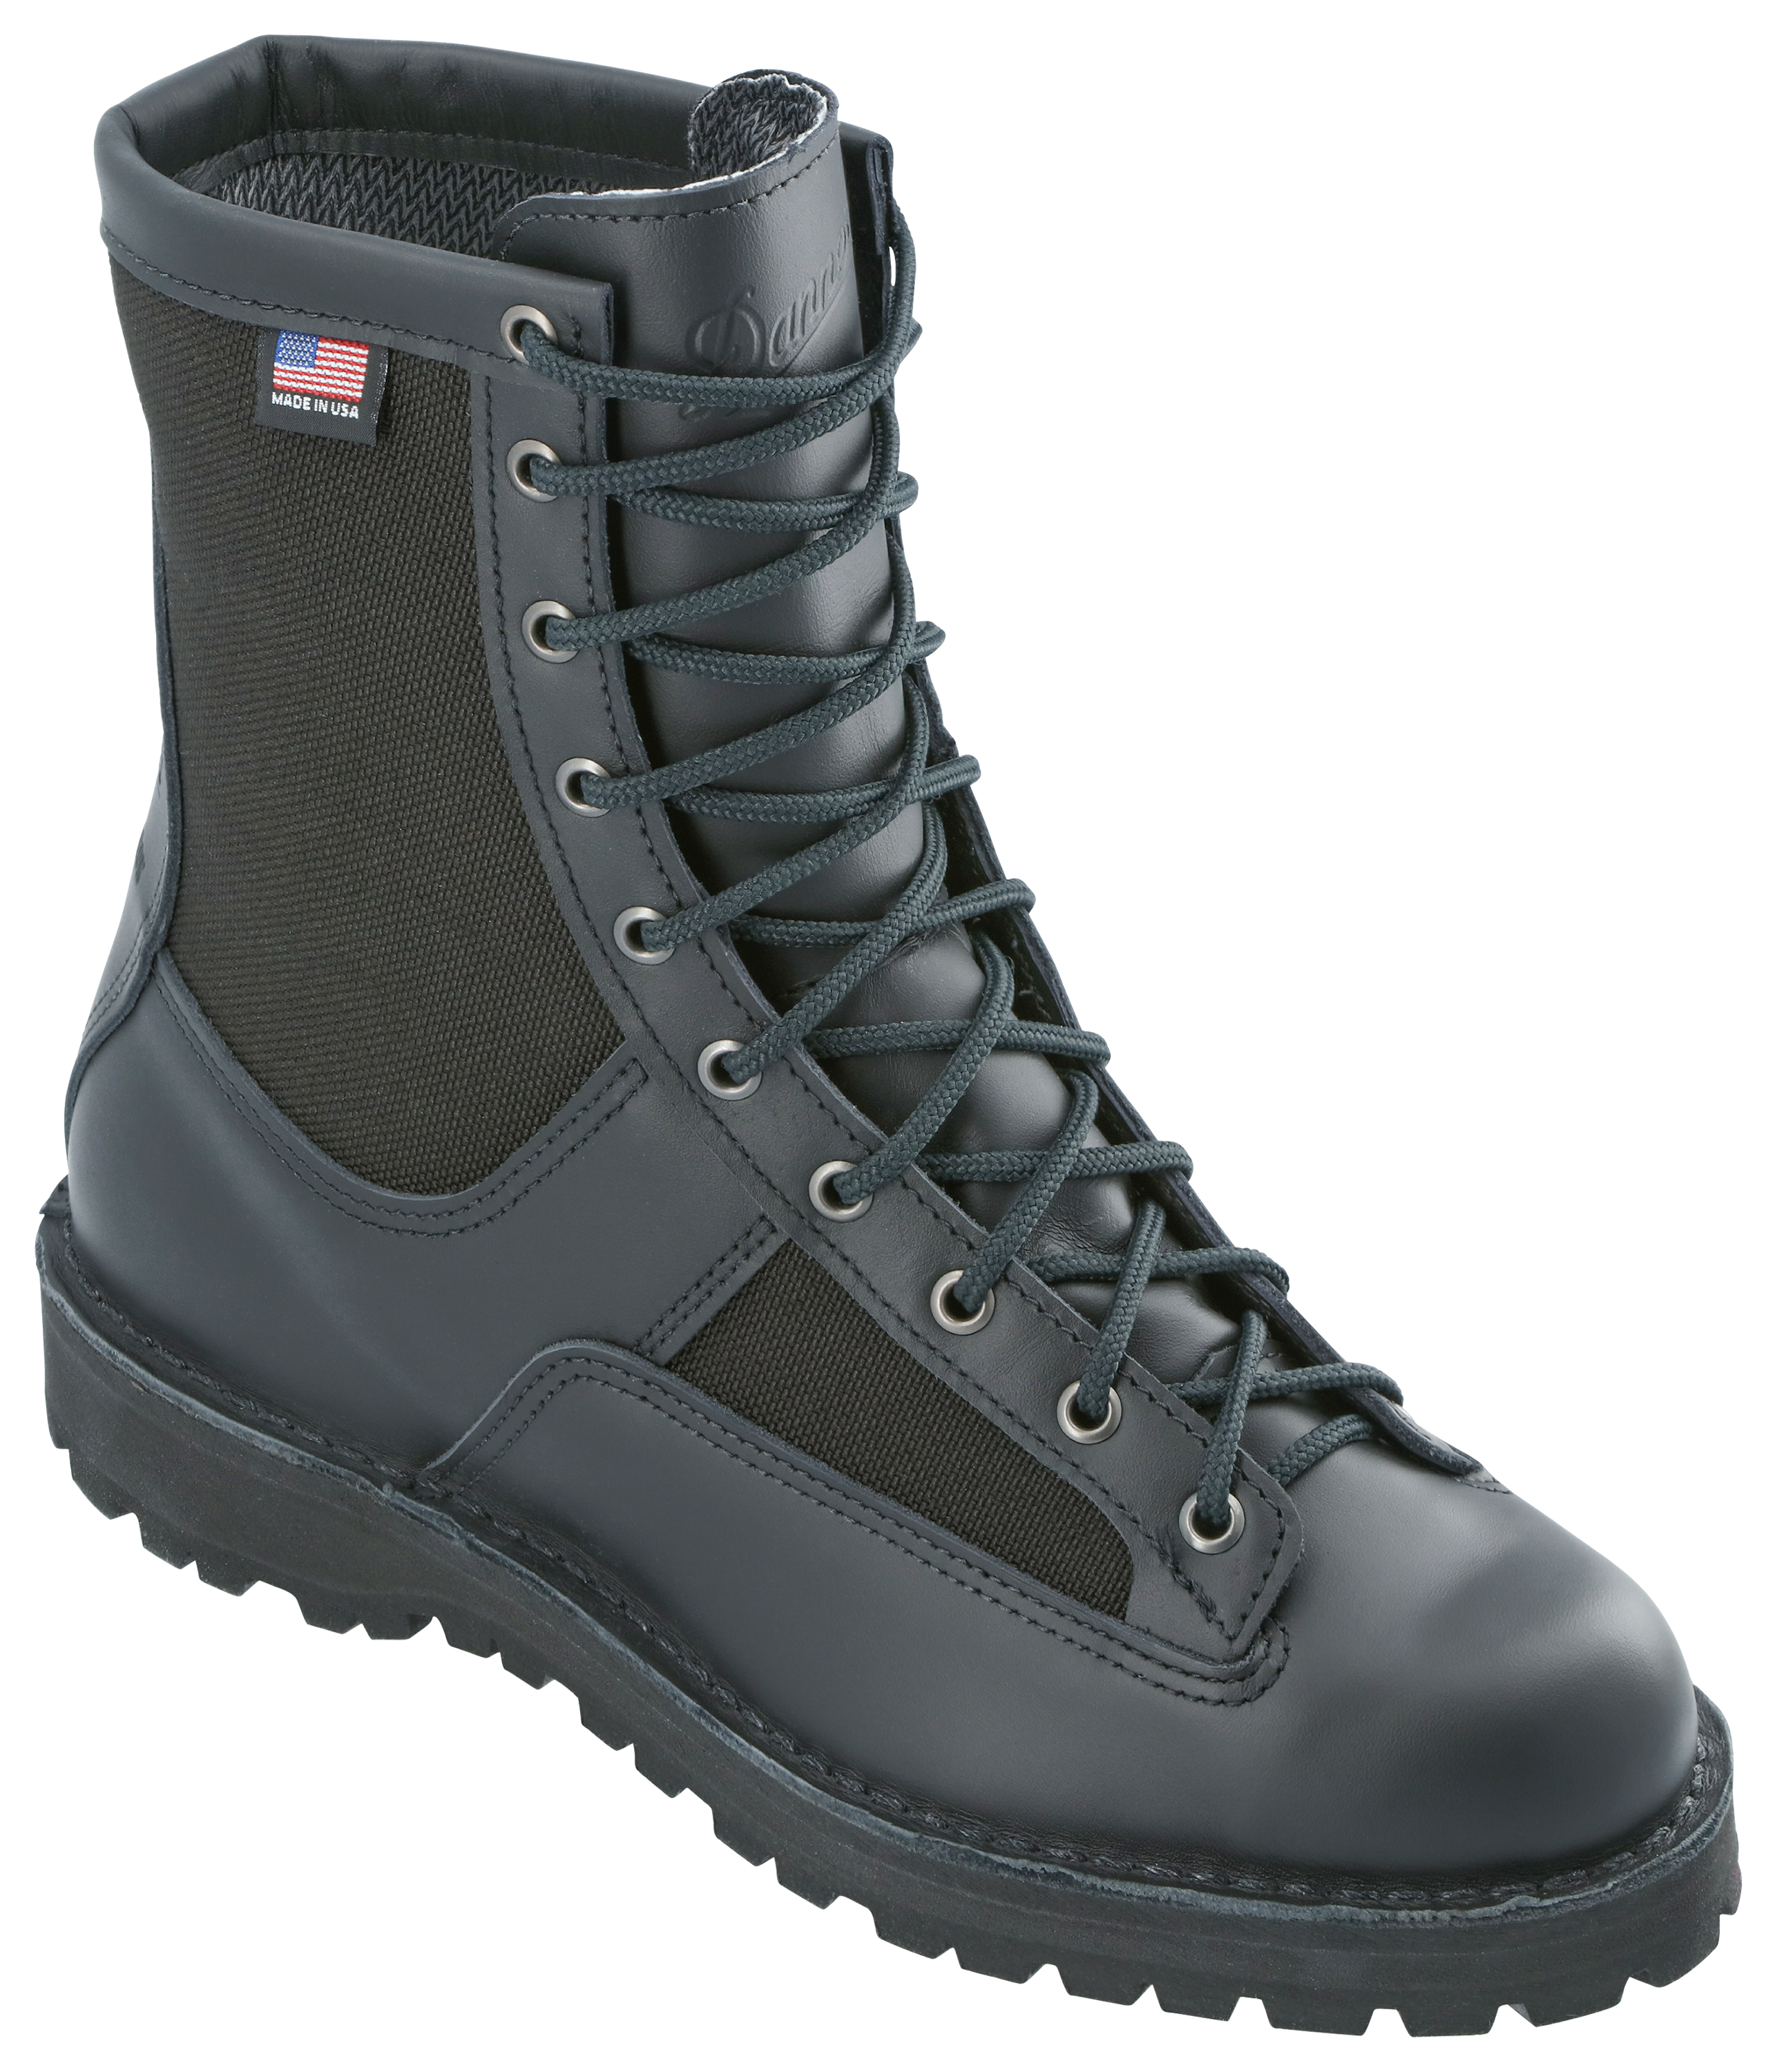 Danner Acadia GORE-TEX Duty Boots for Men - Black - 9.5XW